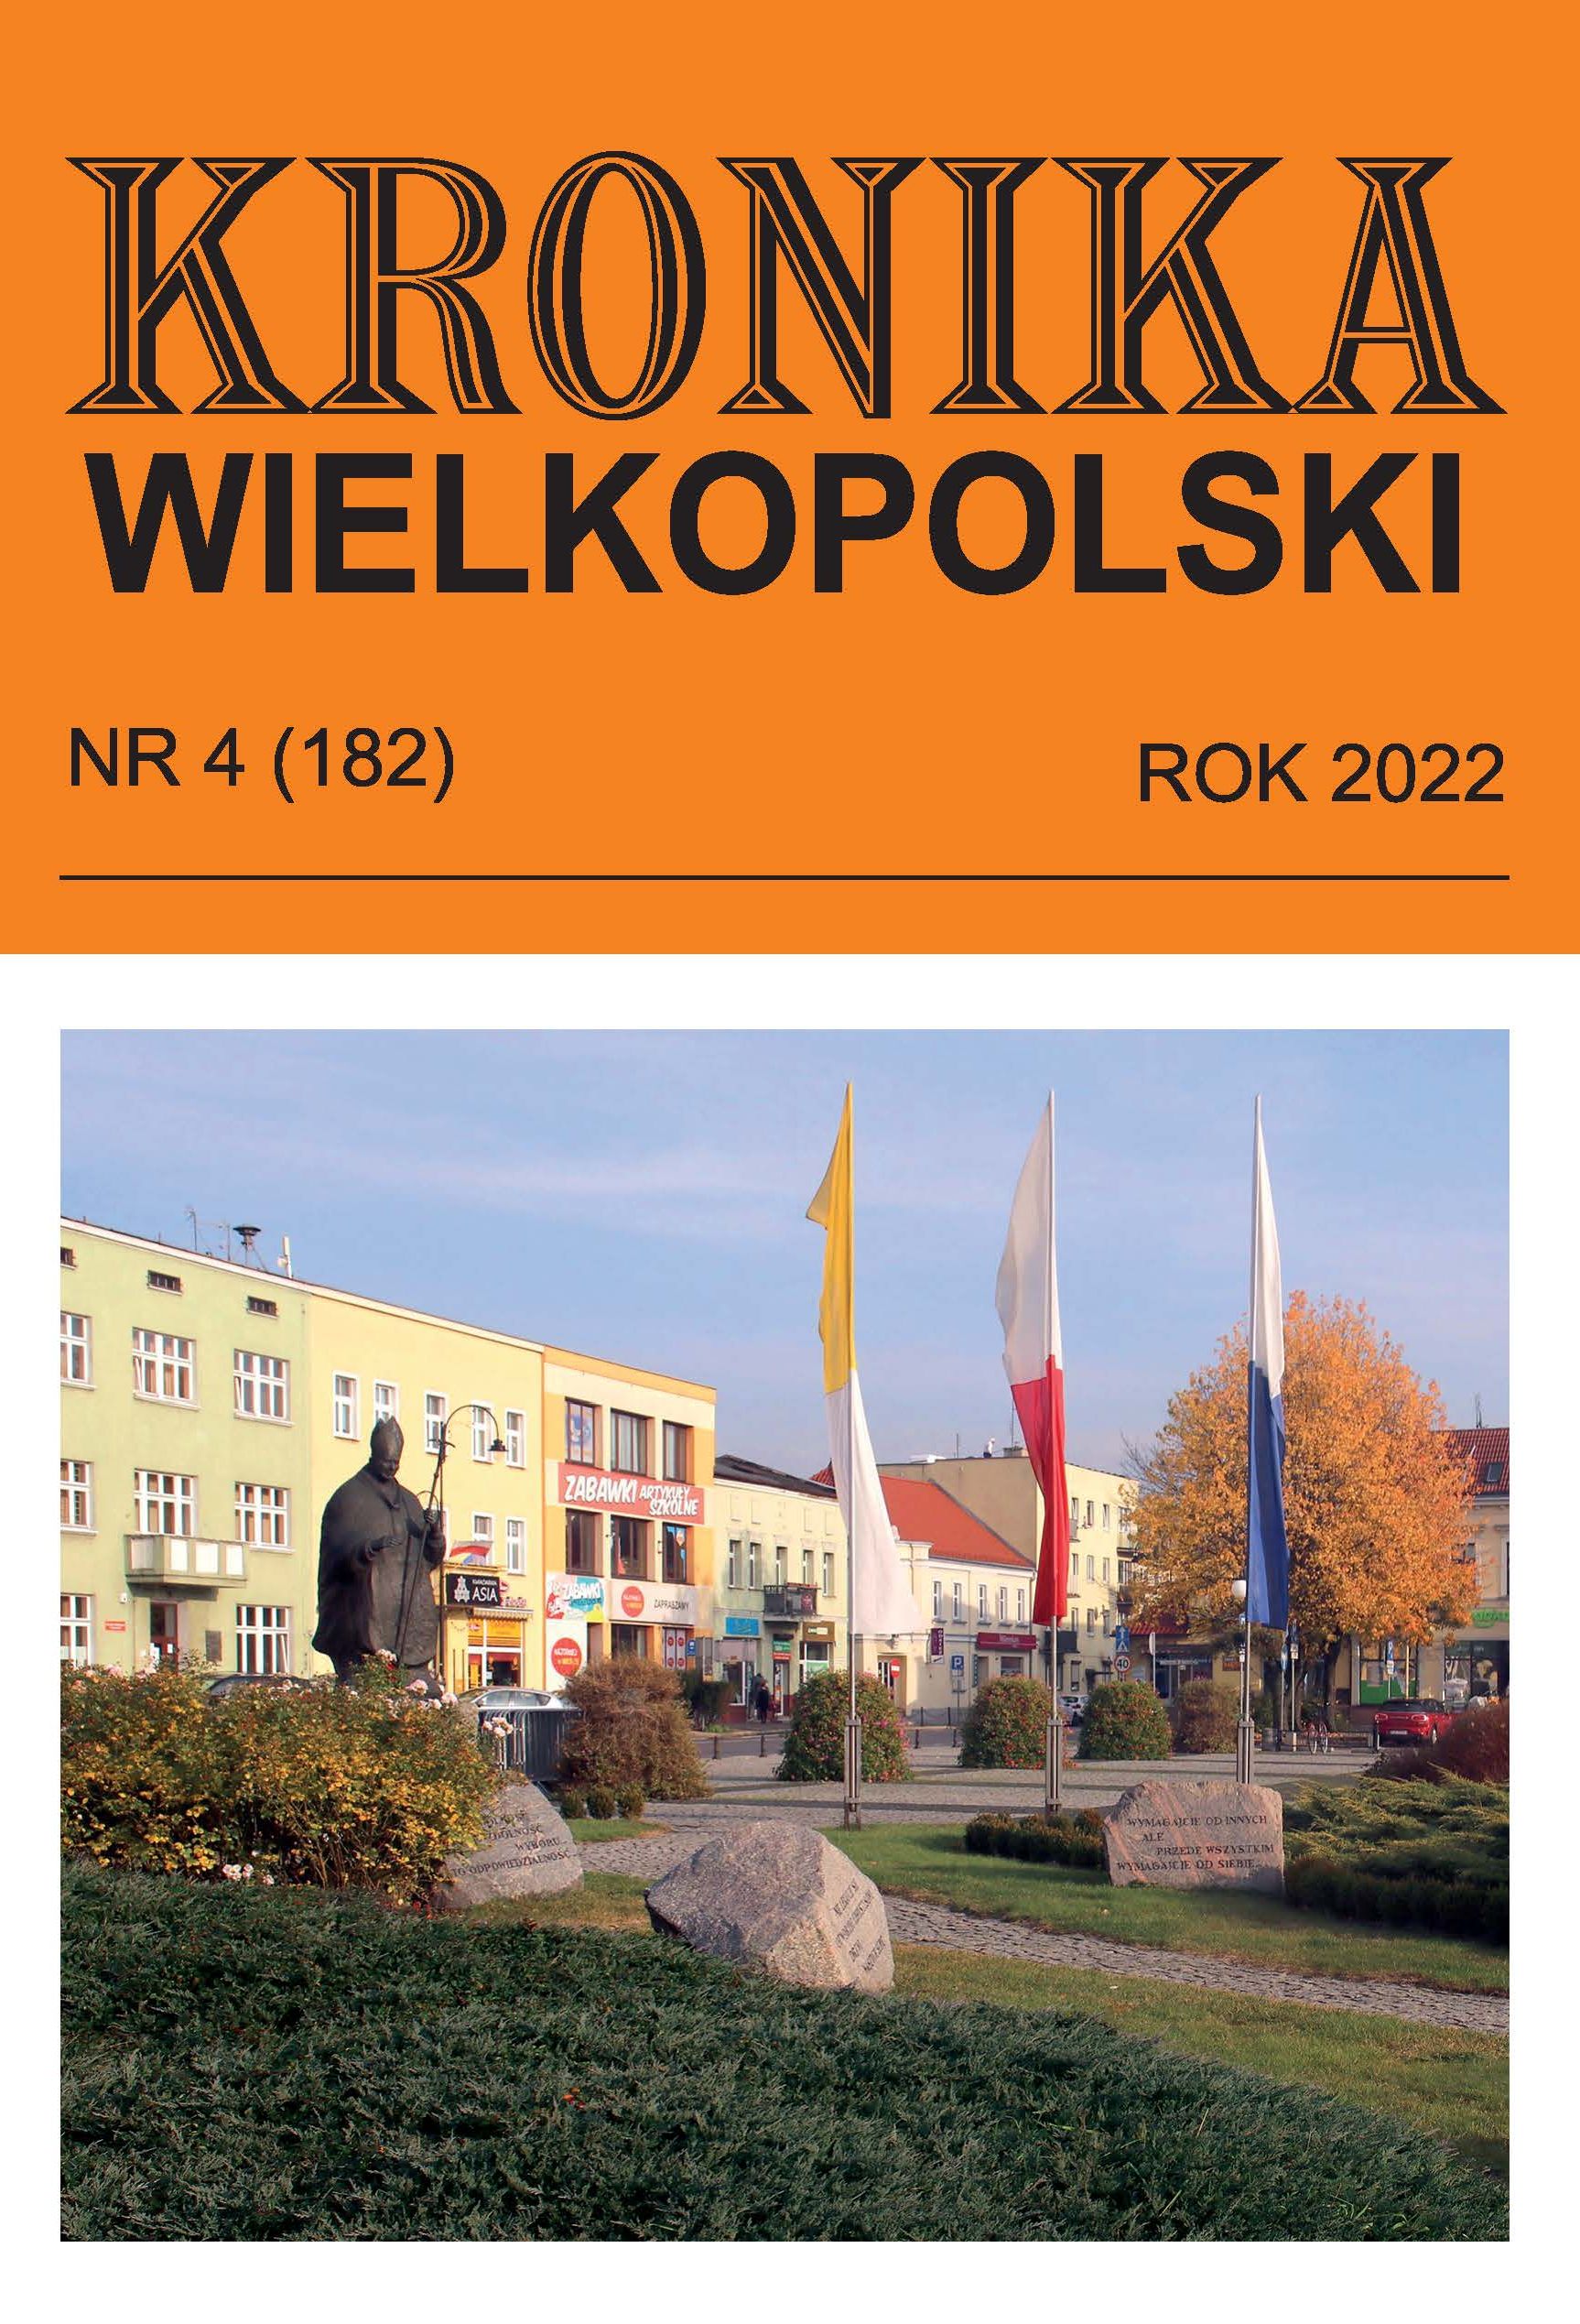 okładka czasopisma Kronika Wielkopolski ze zdjęciem parku z pomnikiem postaci, w tle dwupiętrowy budynek z dużą ilością okien